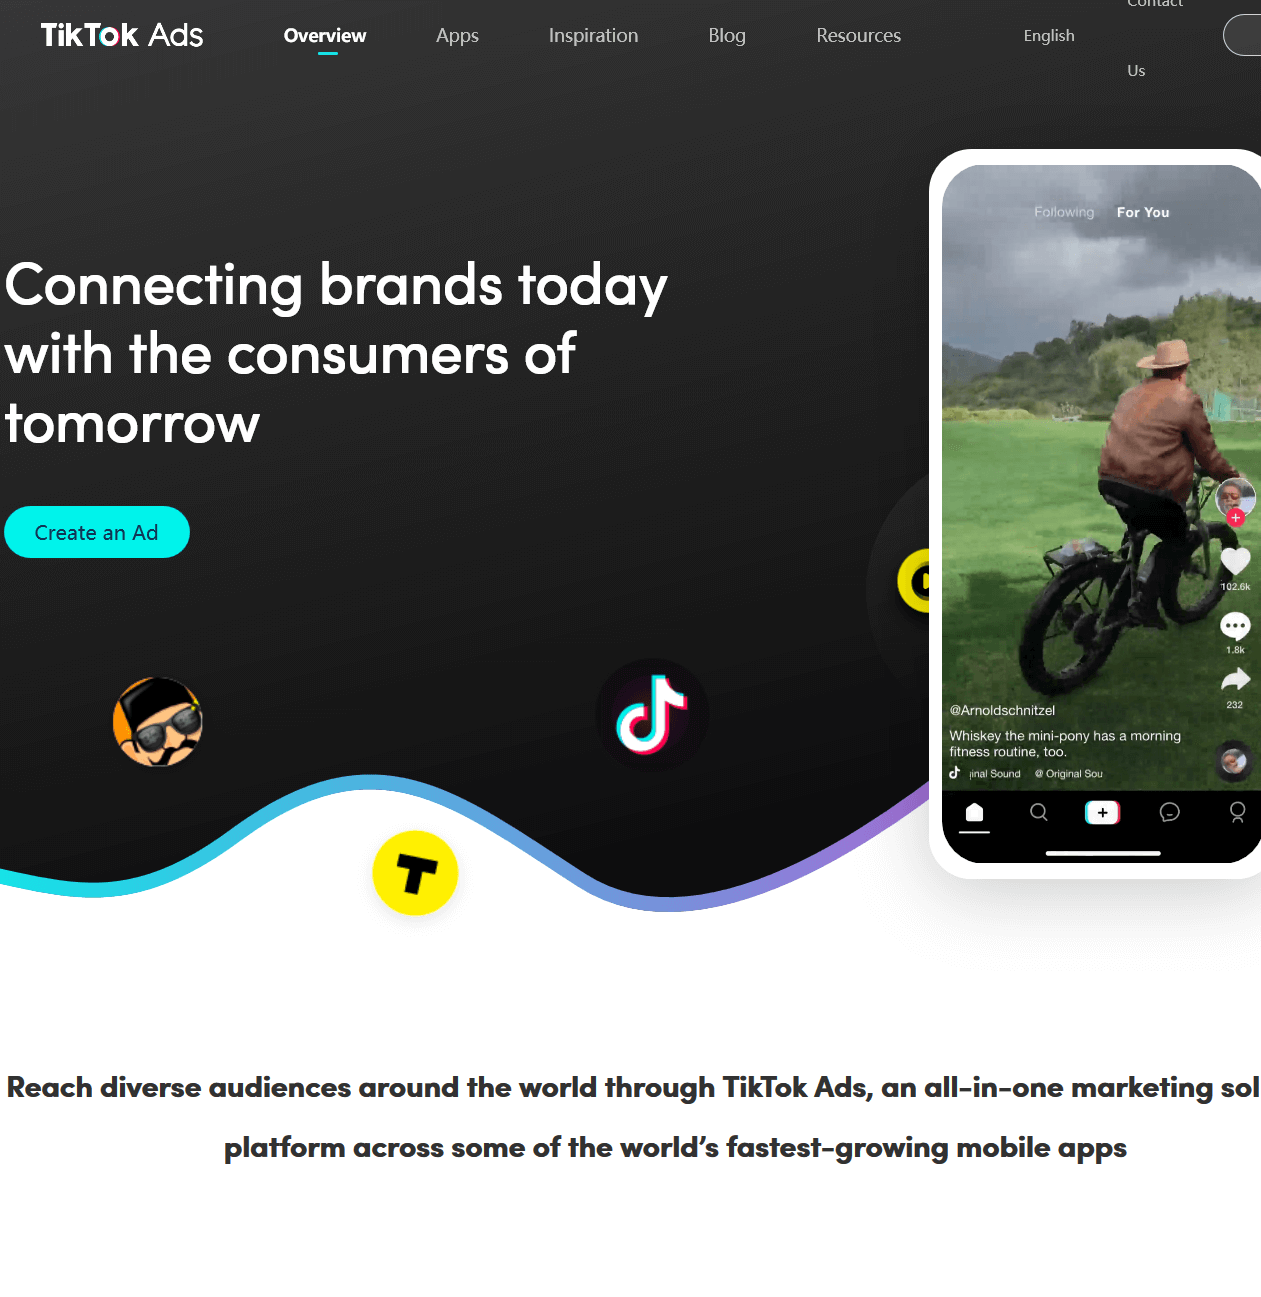 TikTok Ads, TikTok’s advertising service